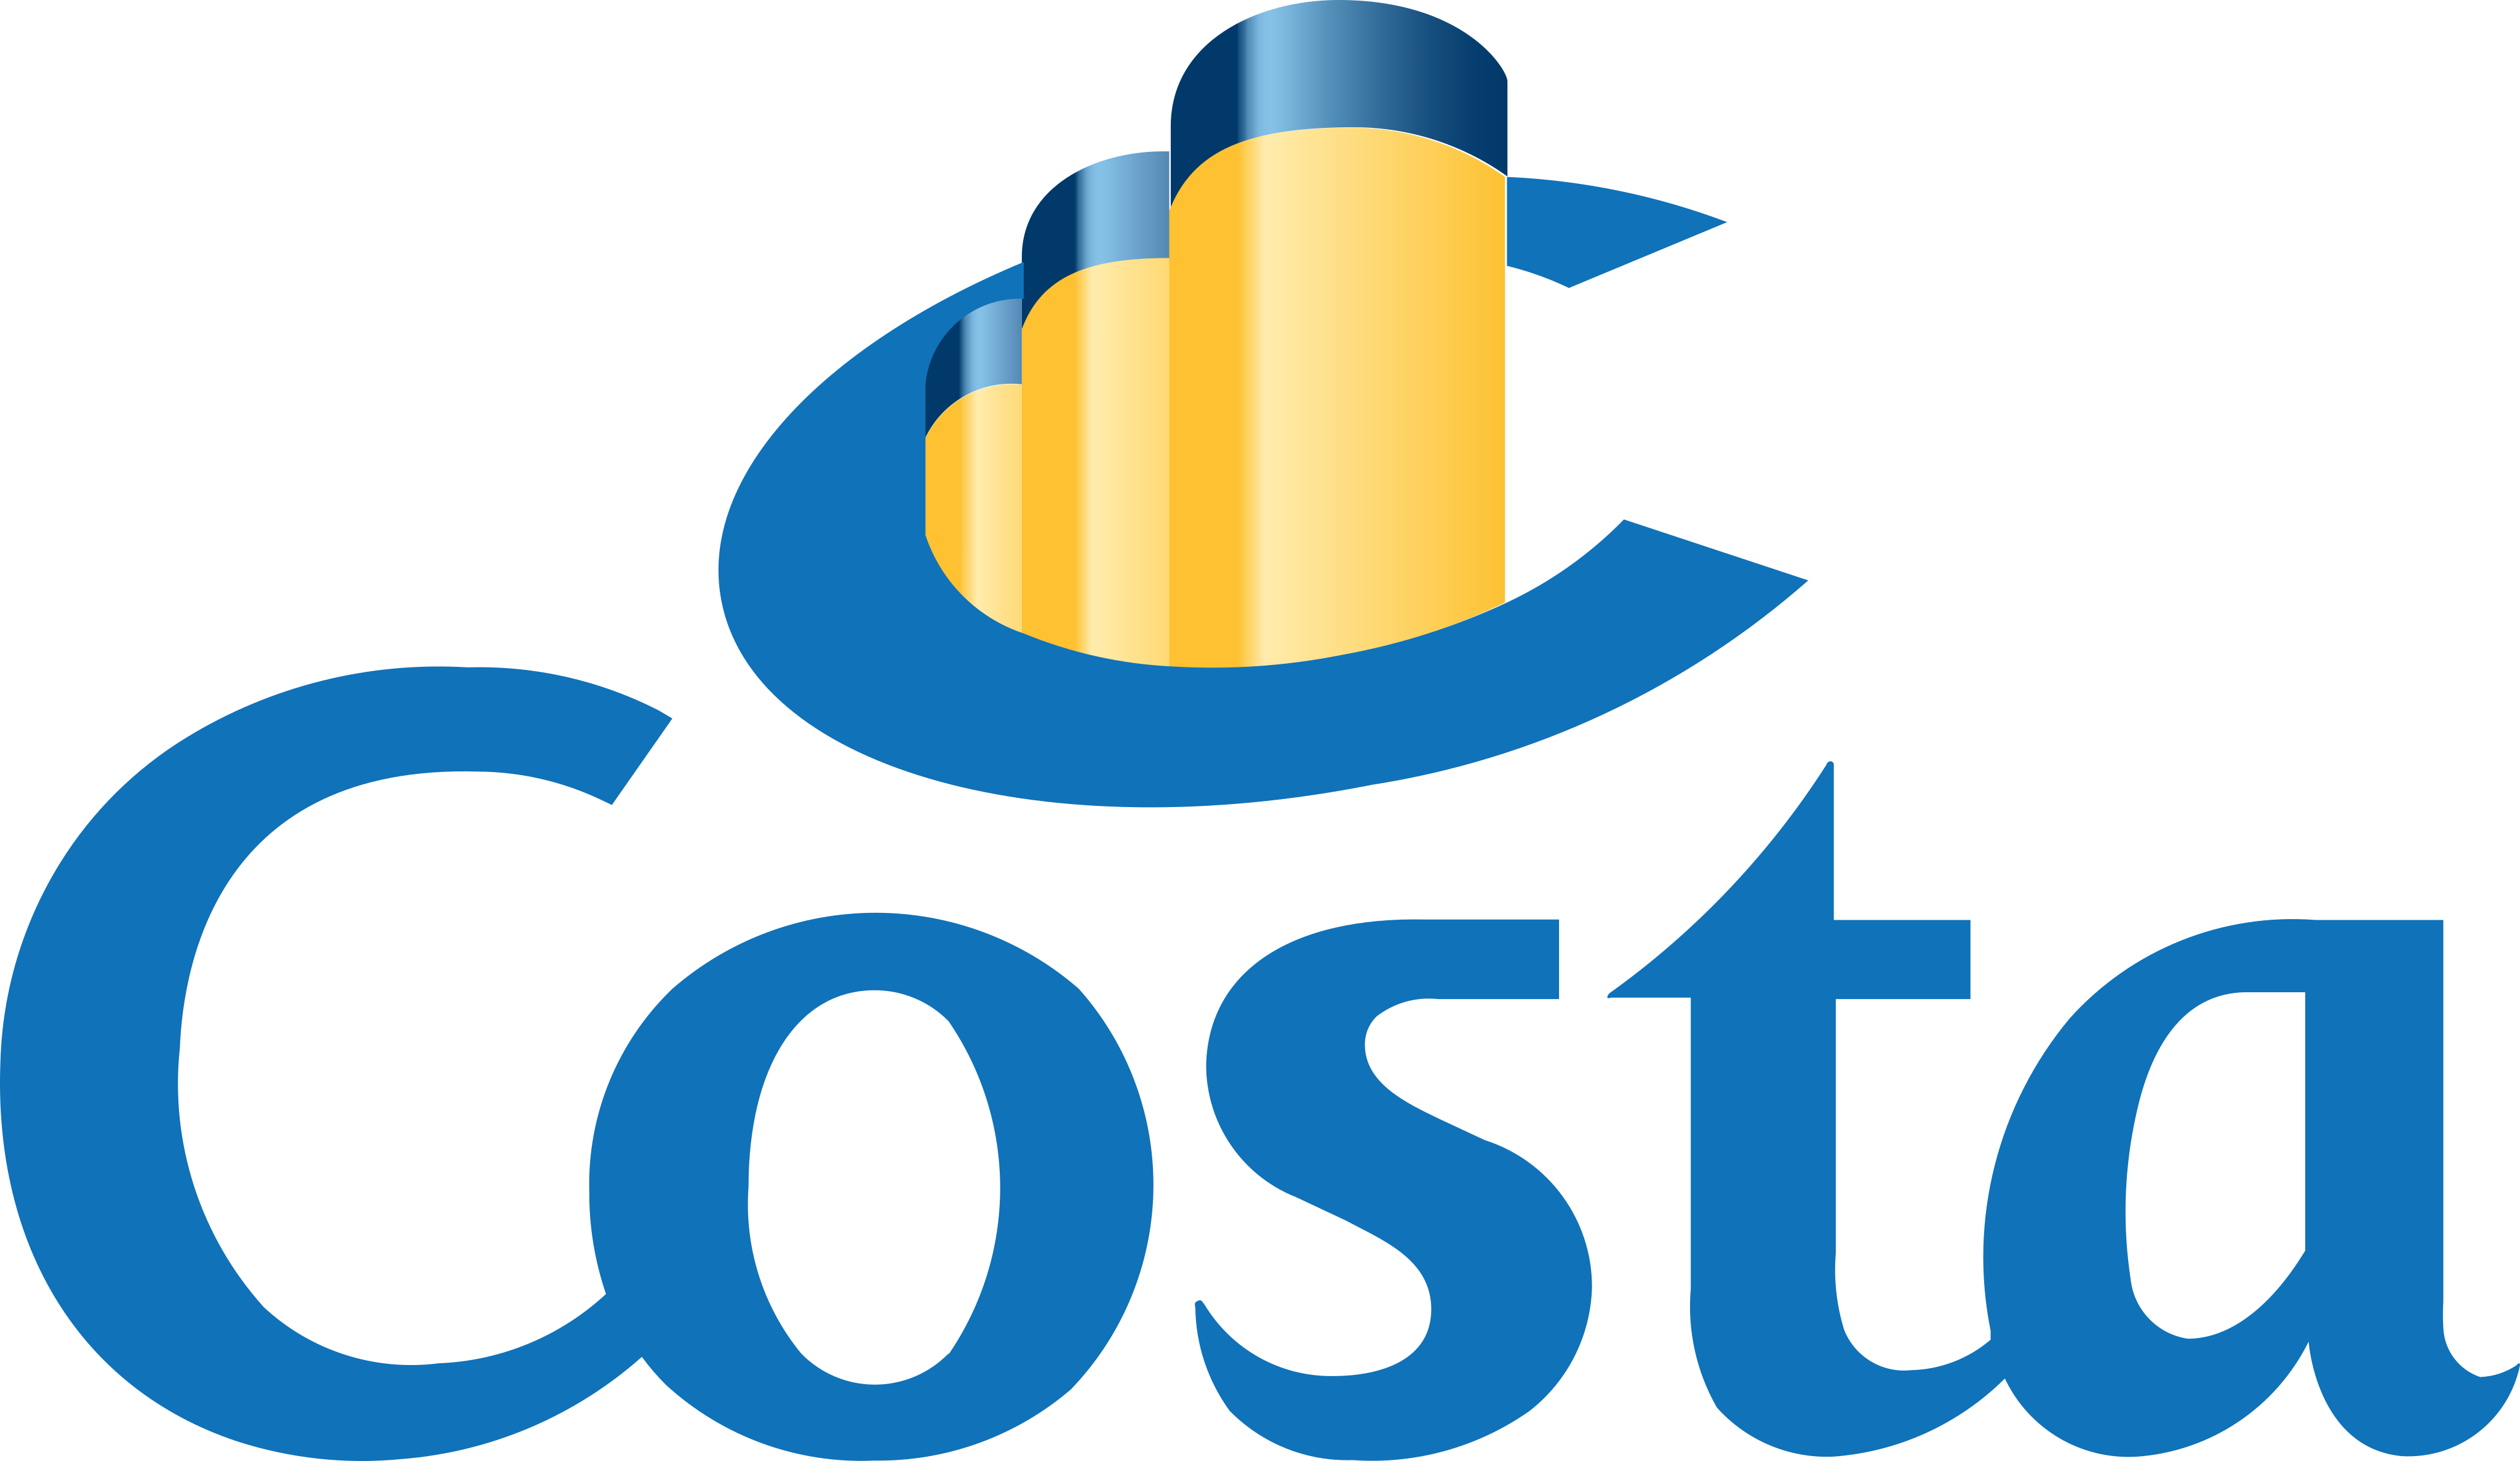 costa-crociere-logo